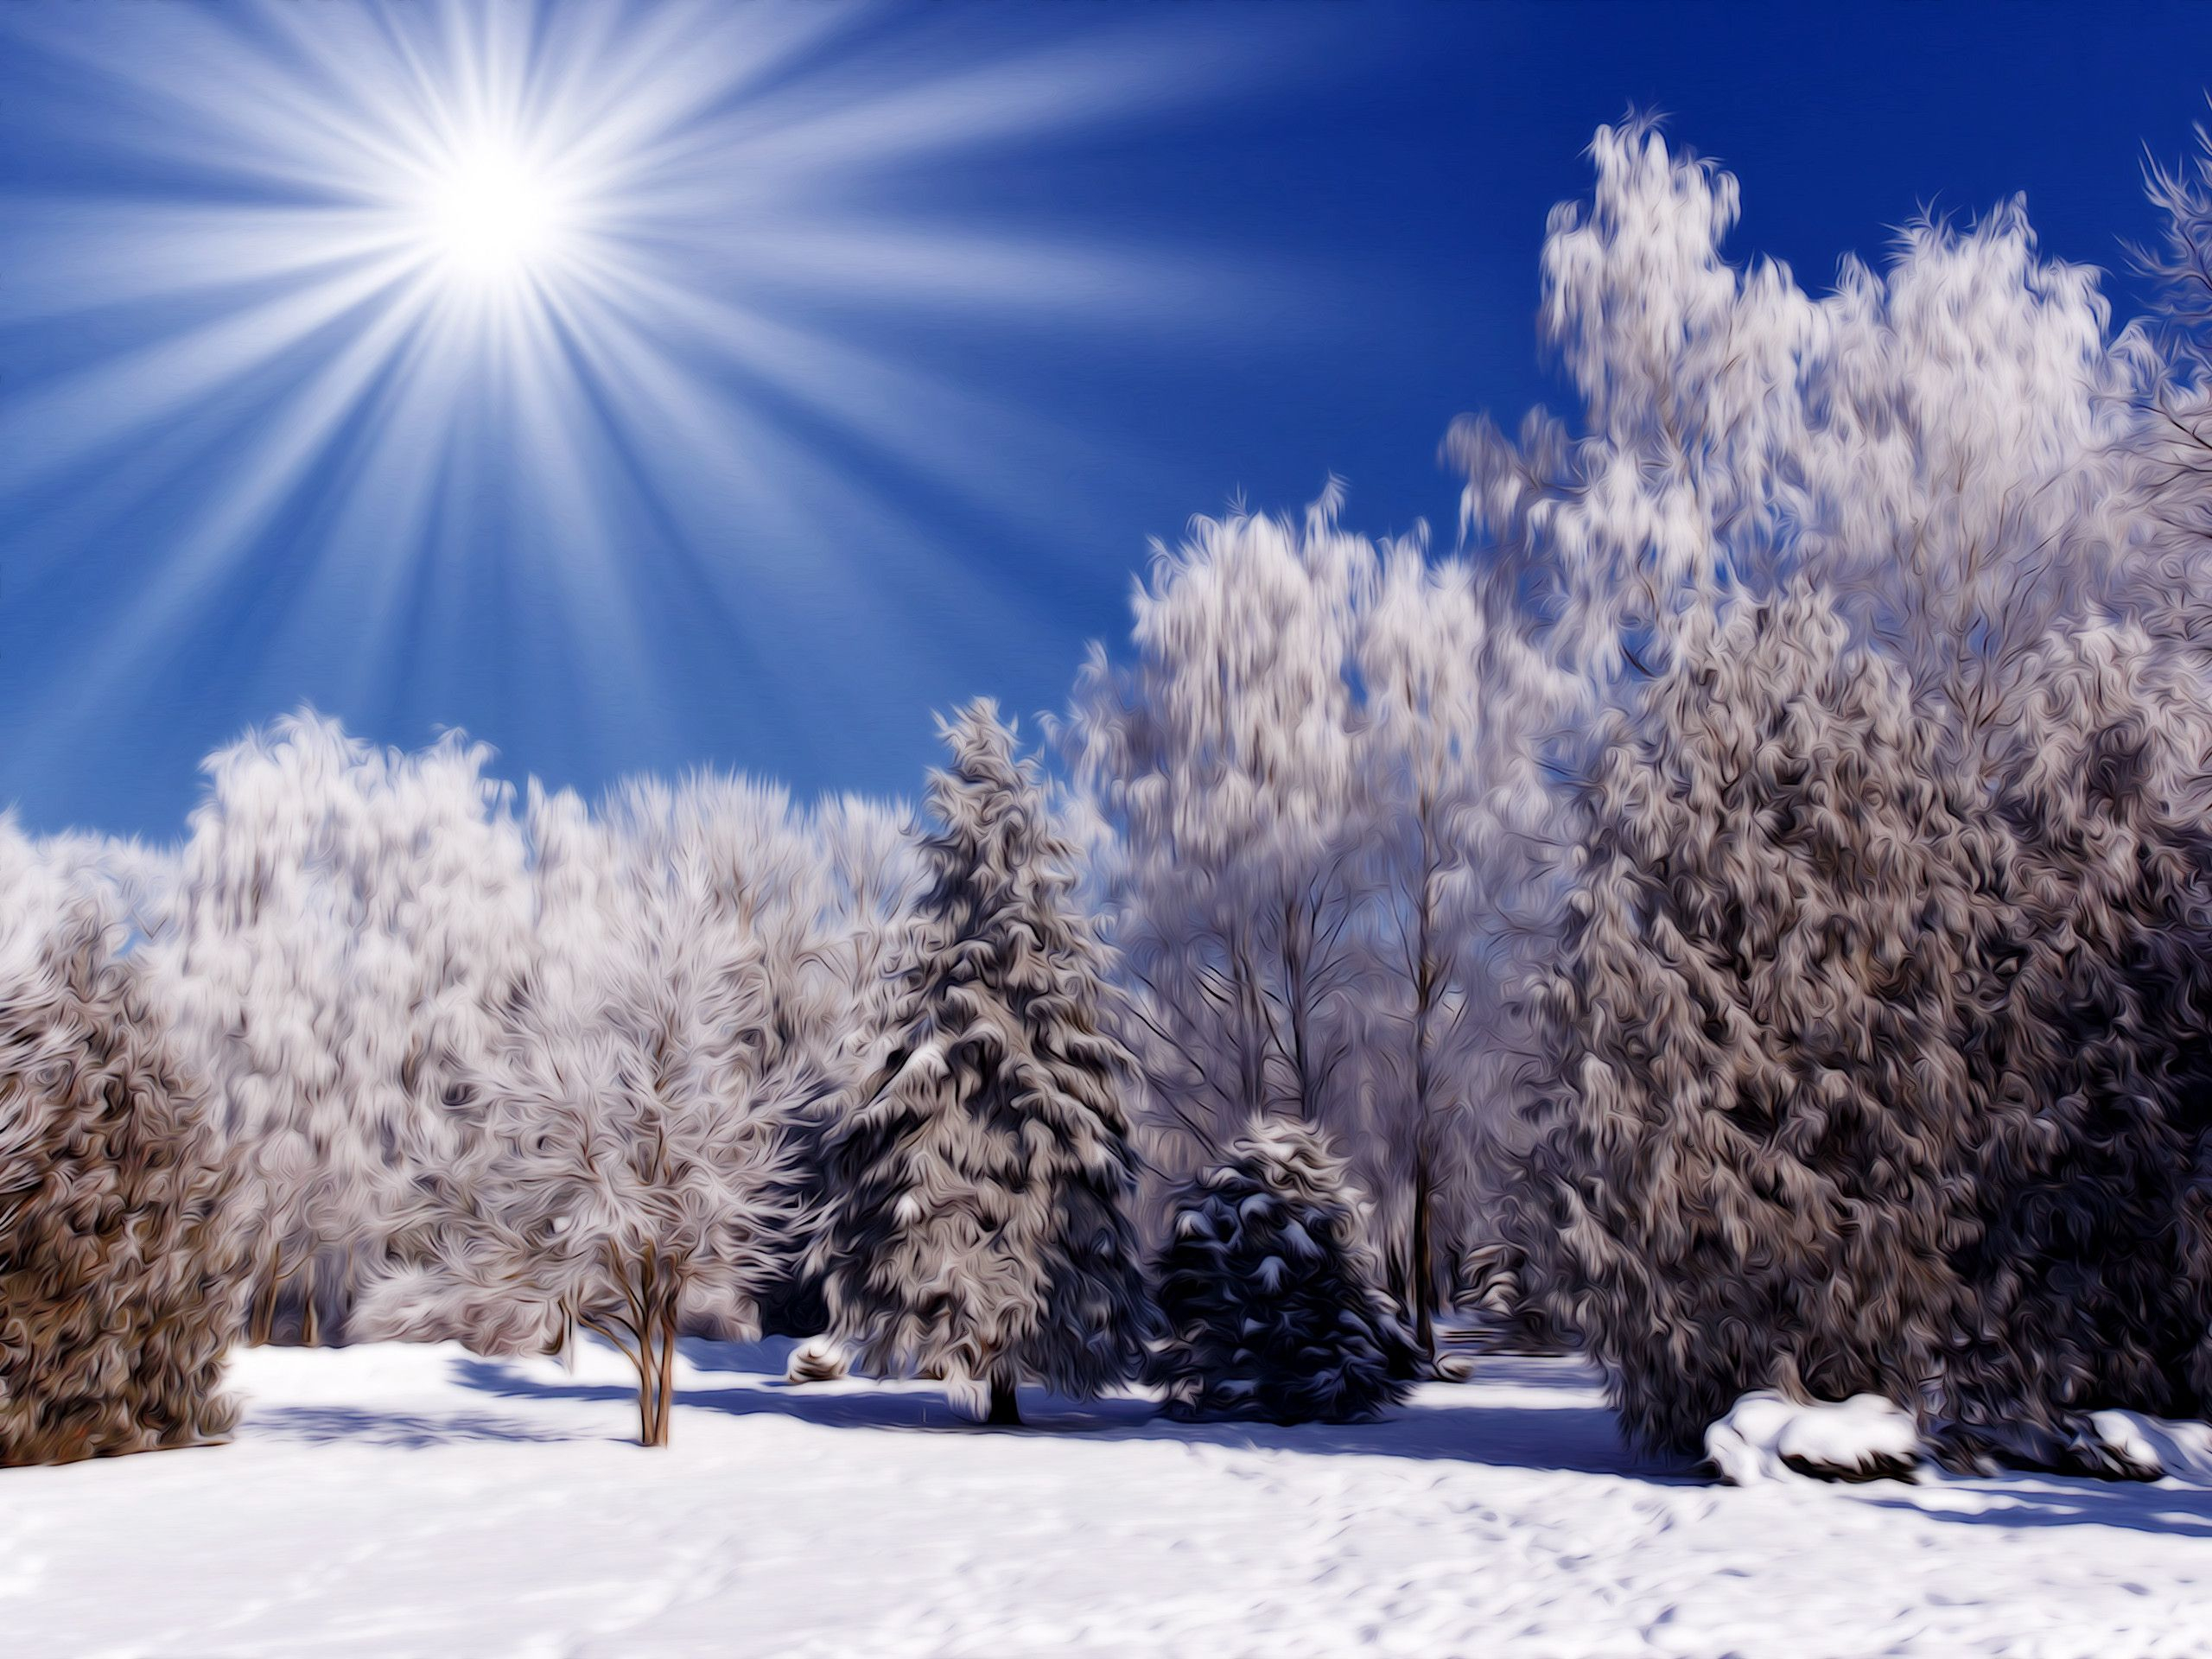 2560x1920 Free Desktop Wallpapers Winter Scenes | Winter landscape photography, Winter landscape, Winter photography